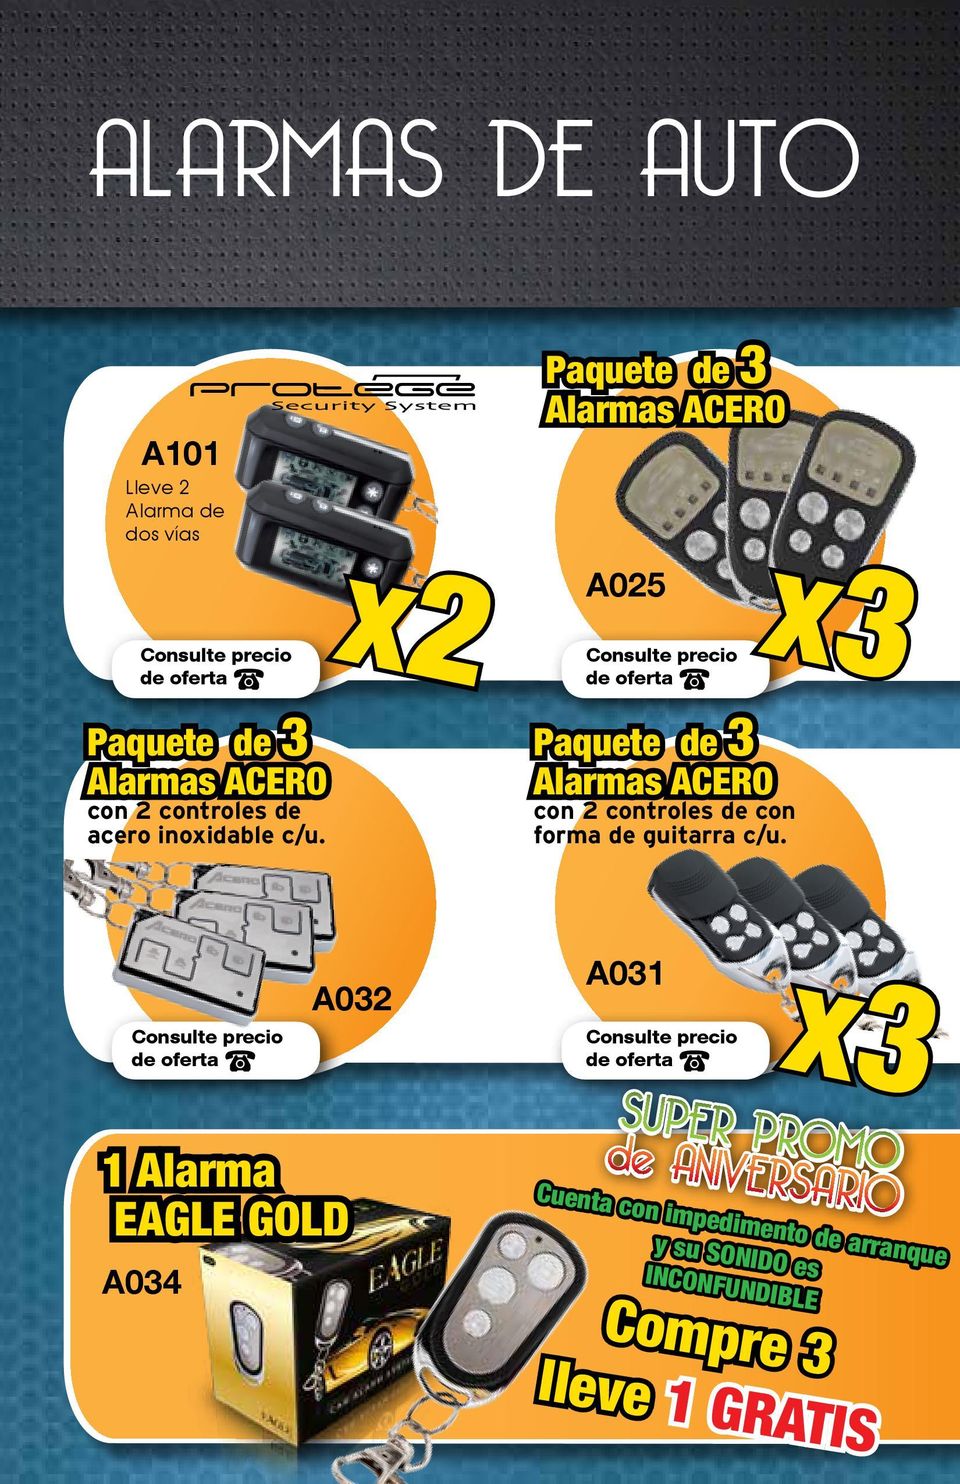 x2 Paquete de 3 Alarmas ACERO A025 Paquete de 3 Alarmas ACERO con 2 controles de con